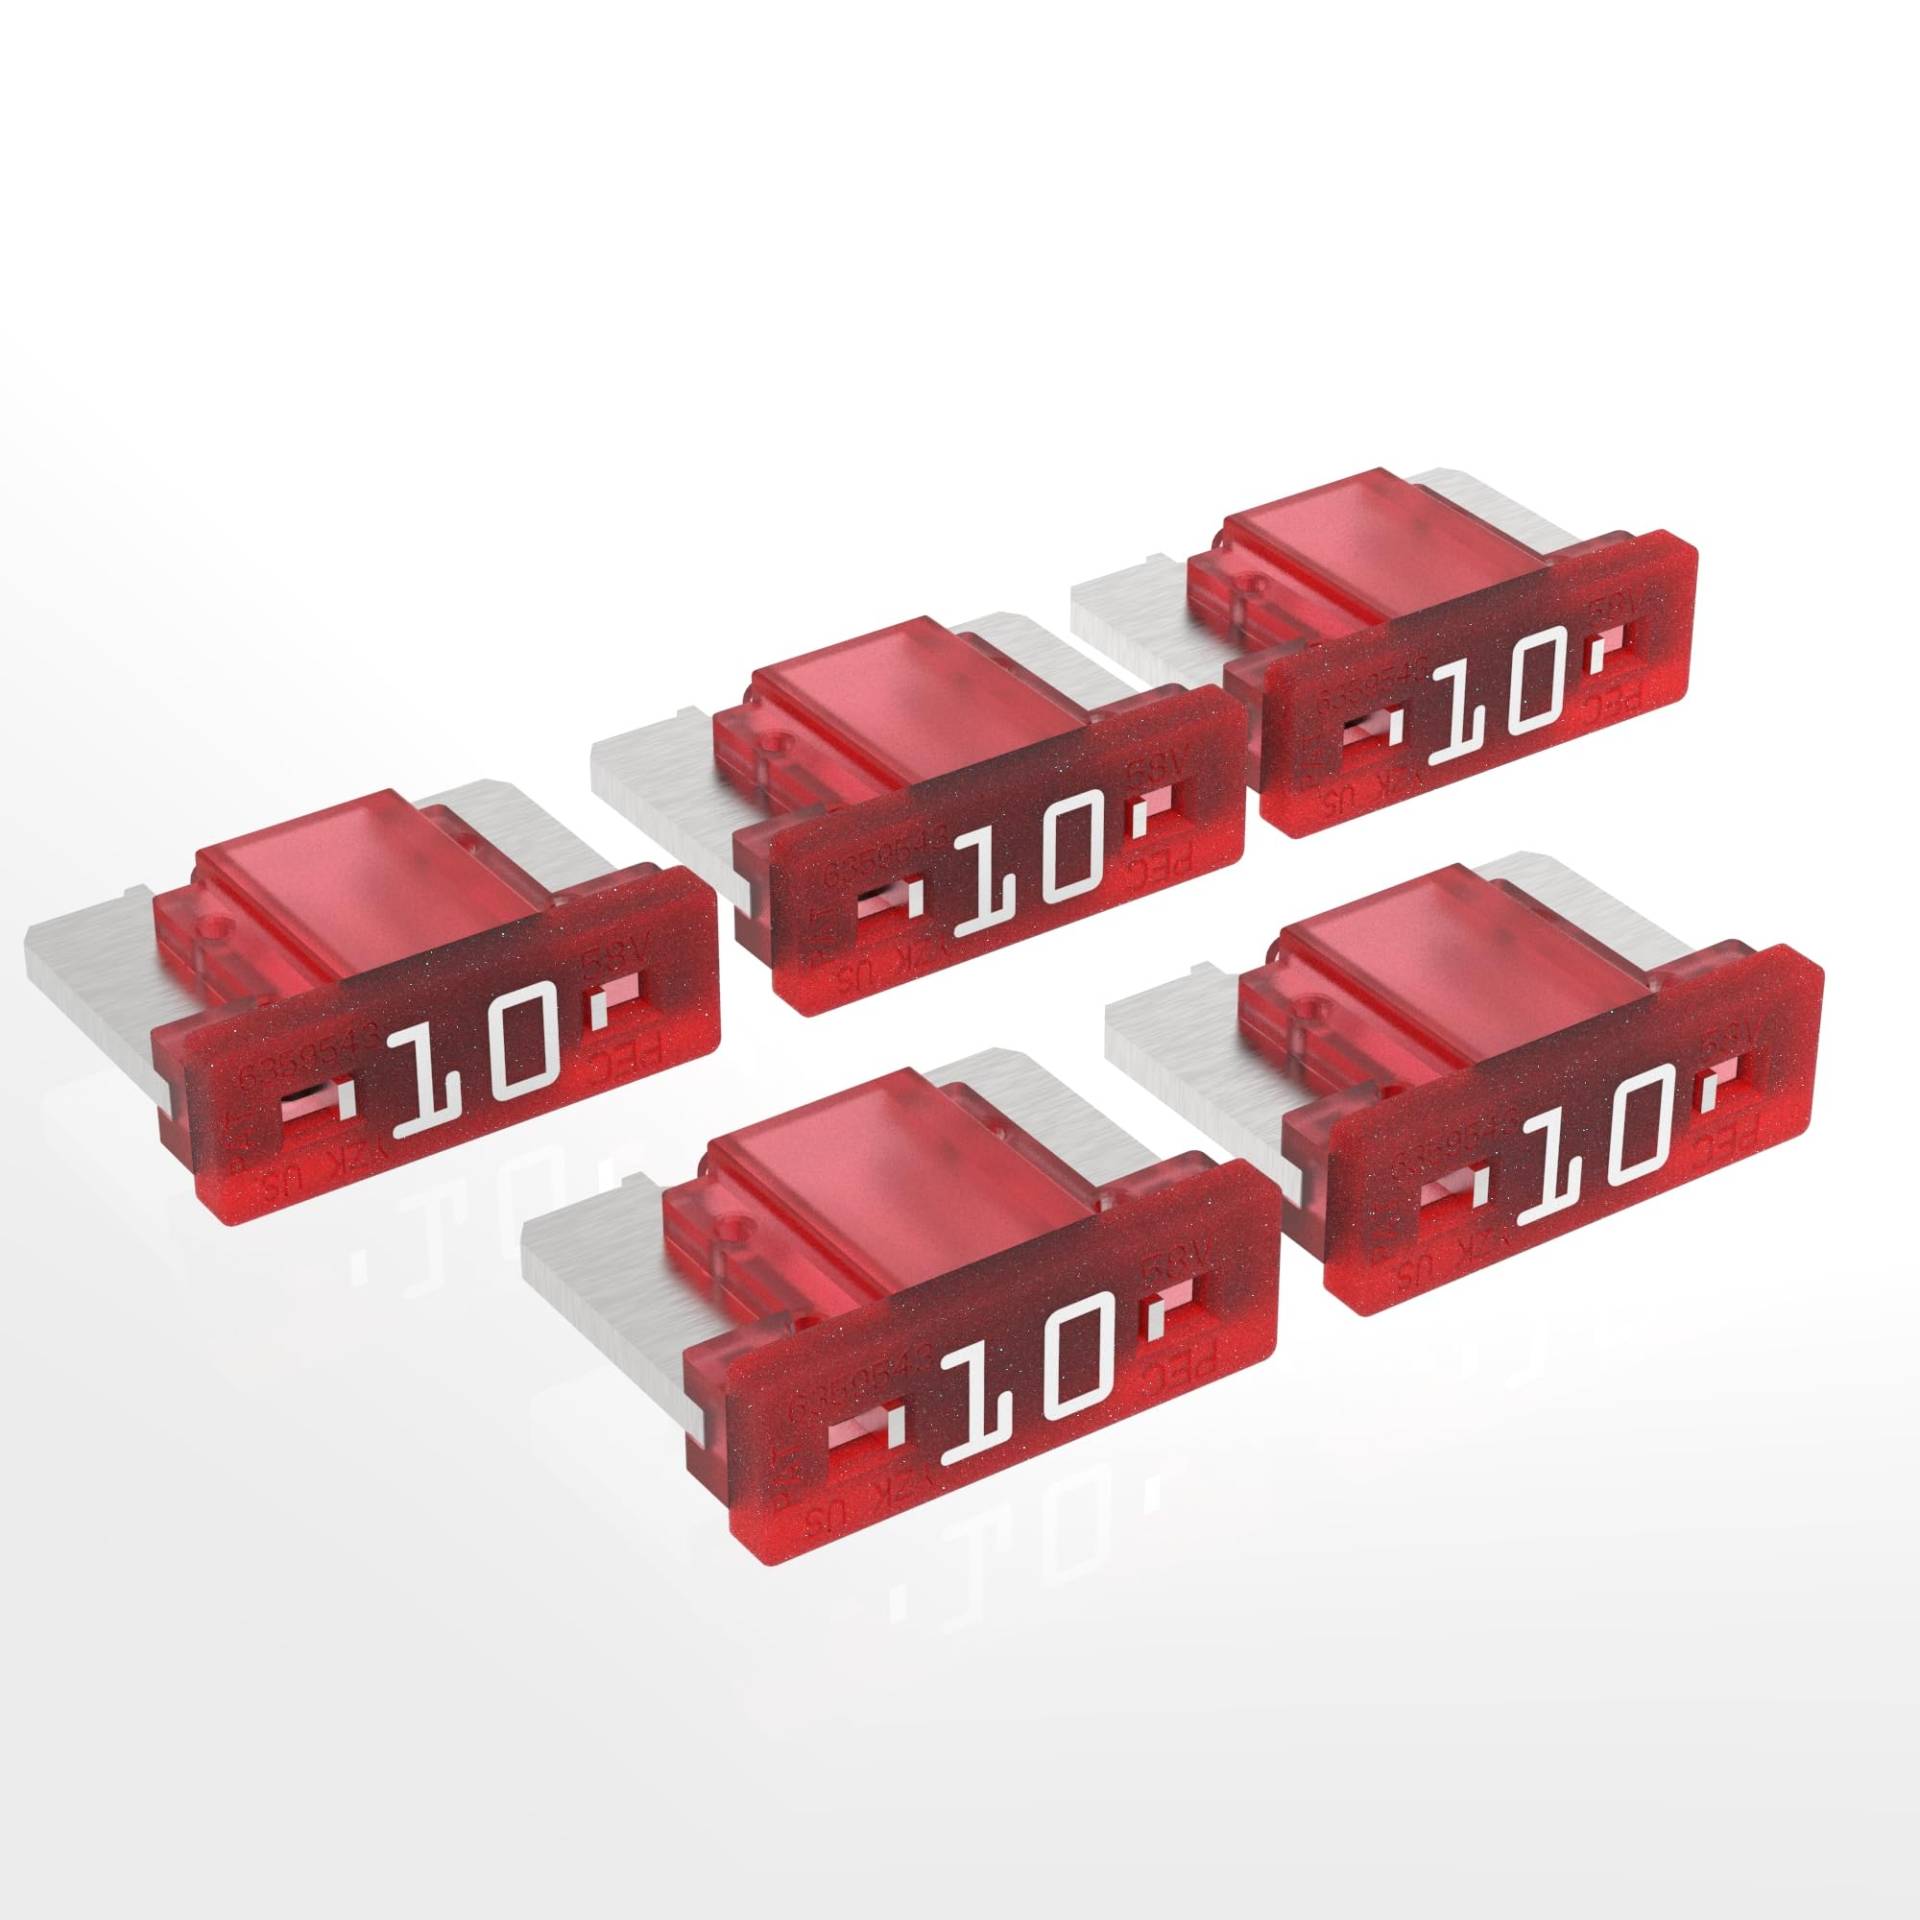 AUPROTEC Mini LP Kfz Sicherungen Flachstecksicherungen 2A - 30A Auswahl: 10A Ampere rot, 5 Stück von AUPROTEC